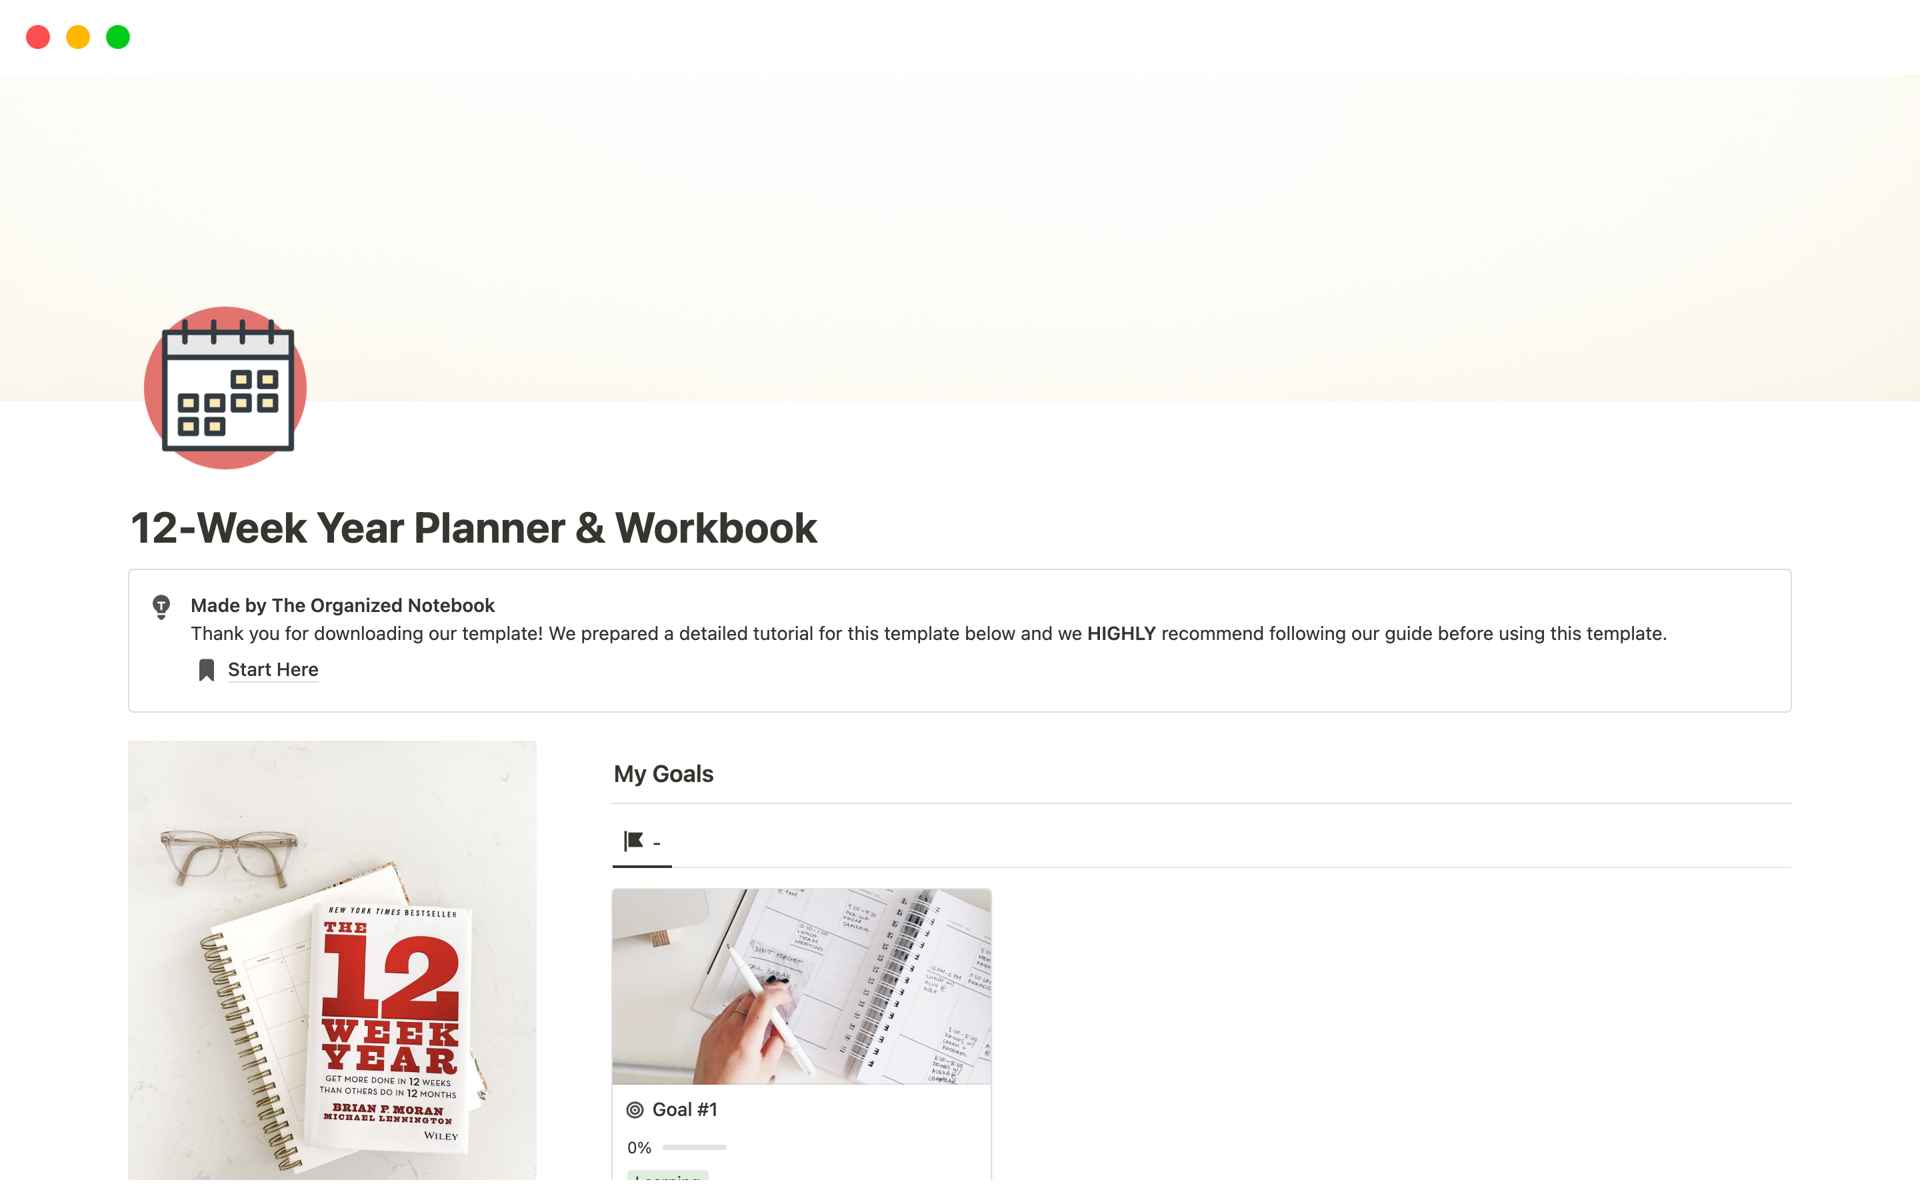 Uma prévia do modelo para 12-Week Year Planner & Workbook